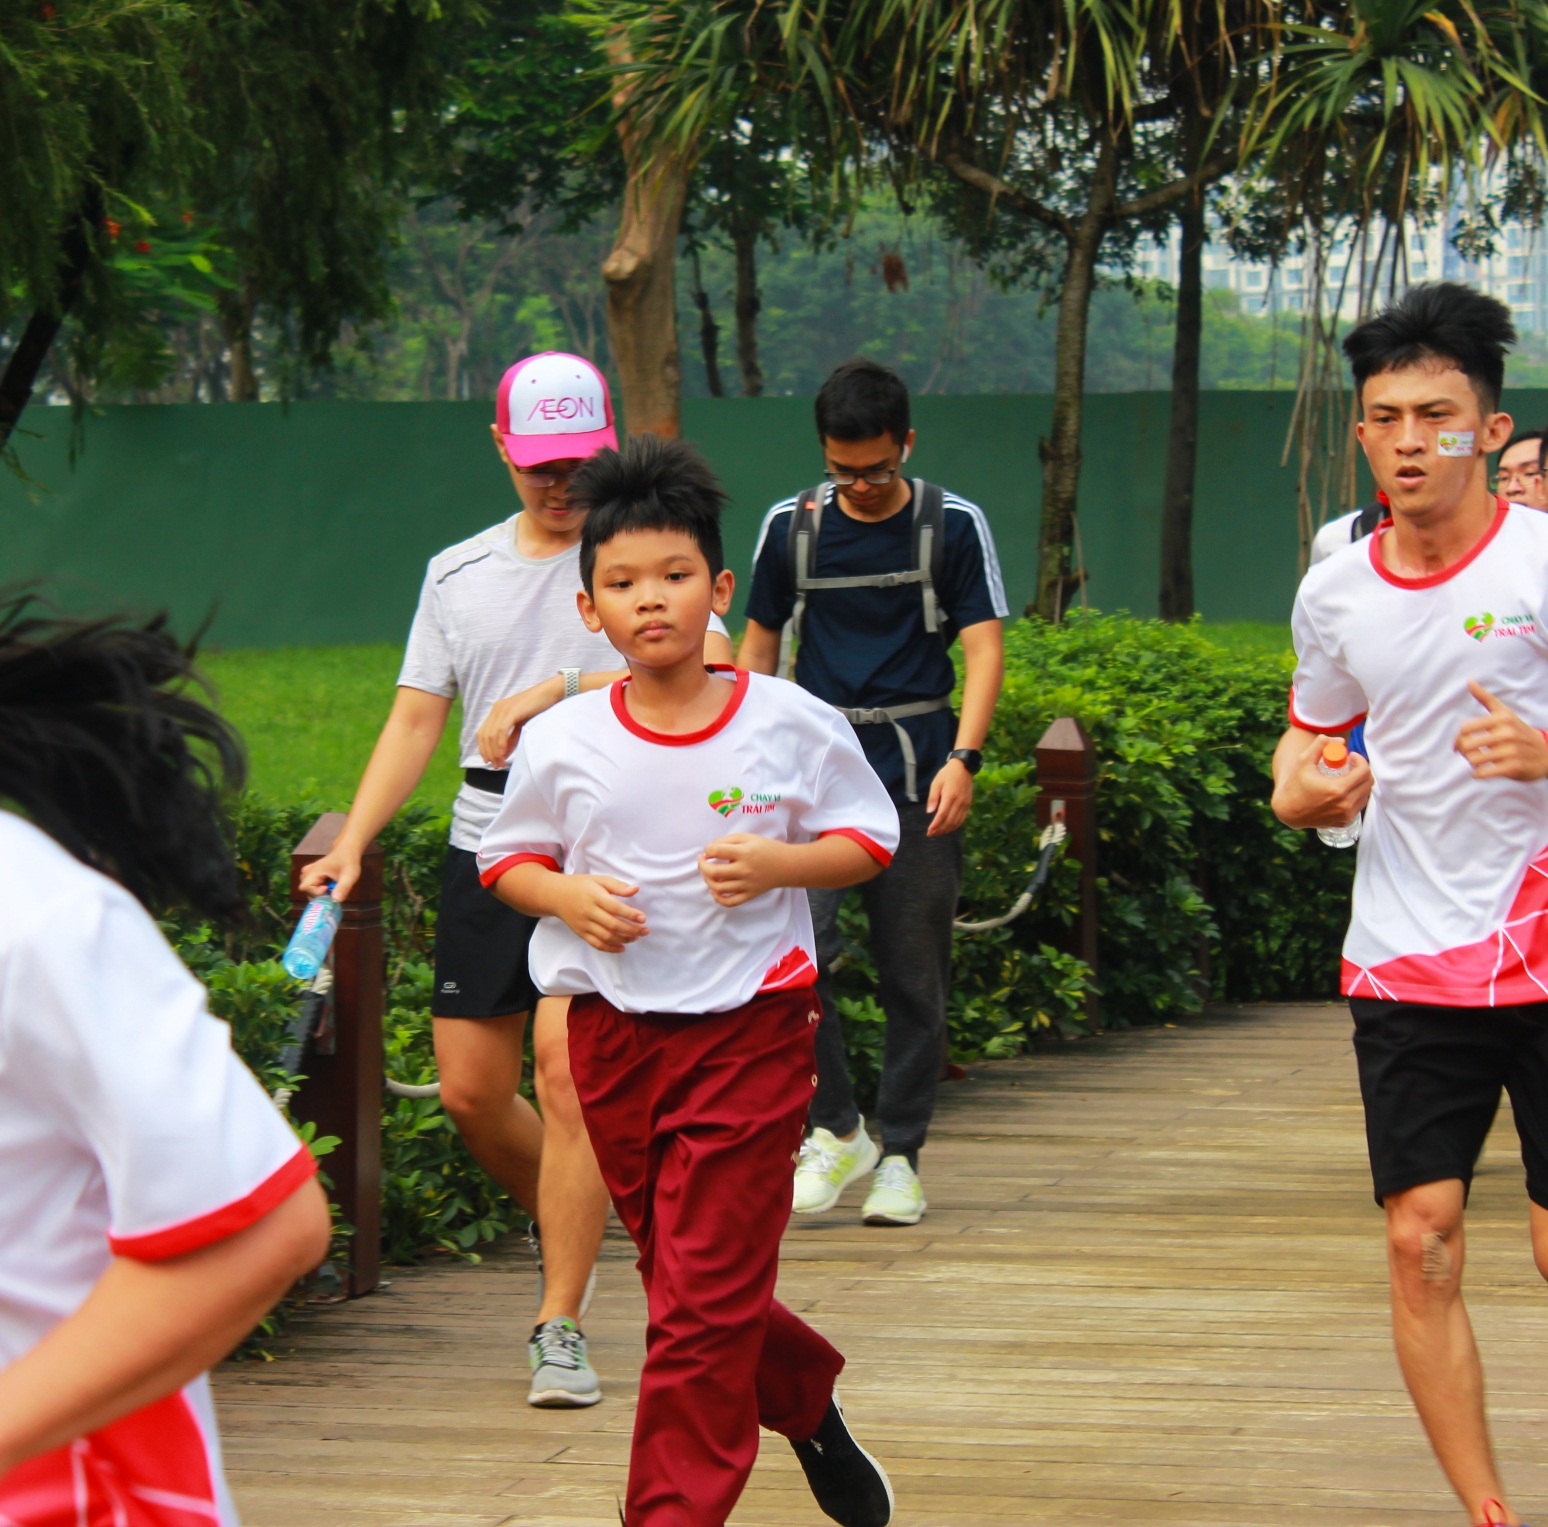 Chủ nhật ý nghĩa của học sinh Asian School với Chạy vì trái tim 2019